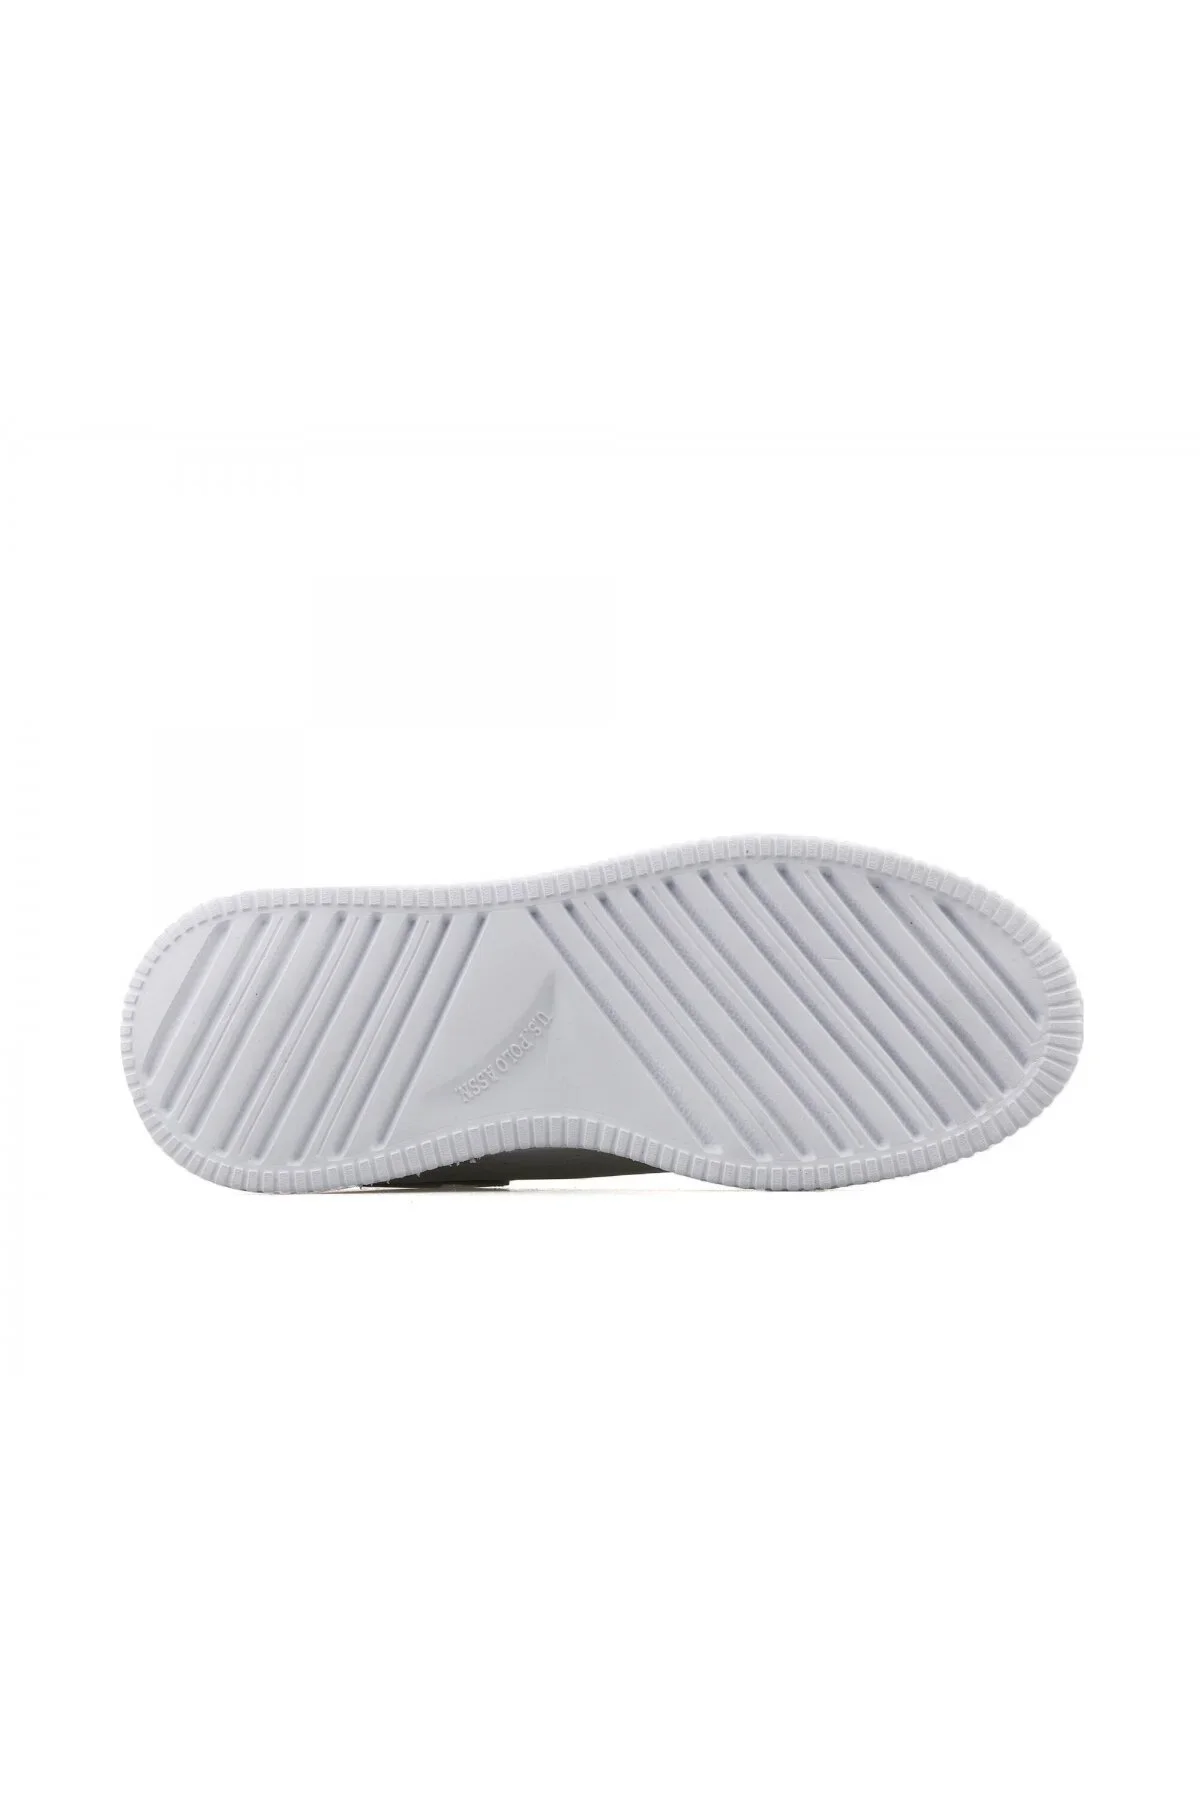 ABE 3FX Kadın Sneaker Spor Ayakkabı-Beyaz - 4